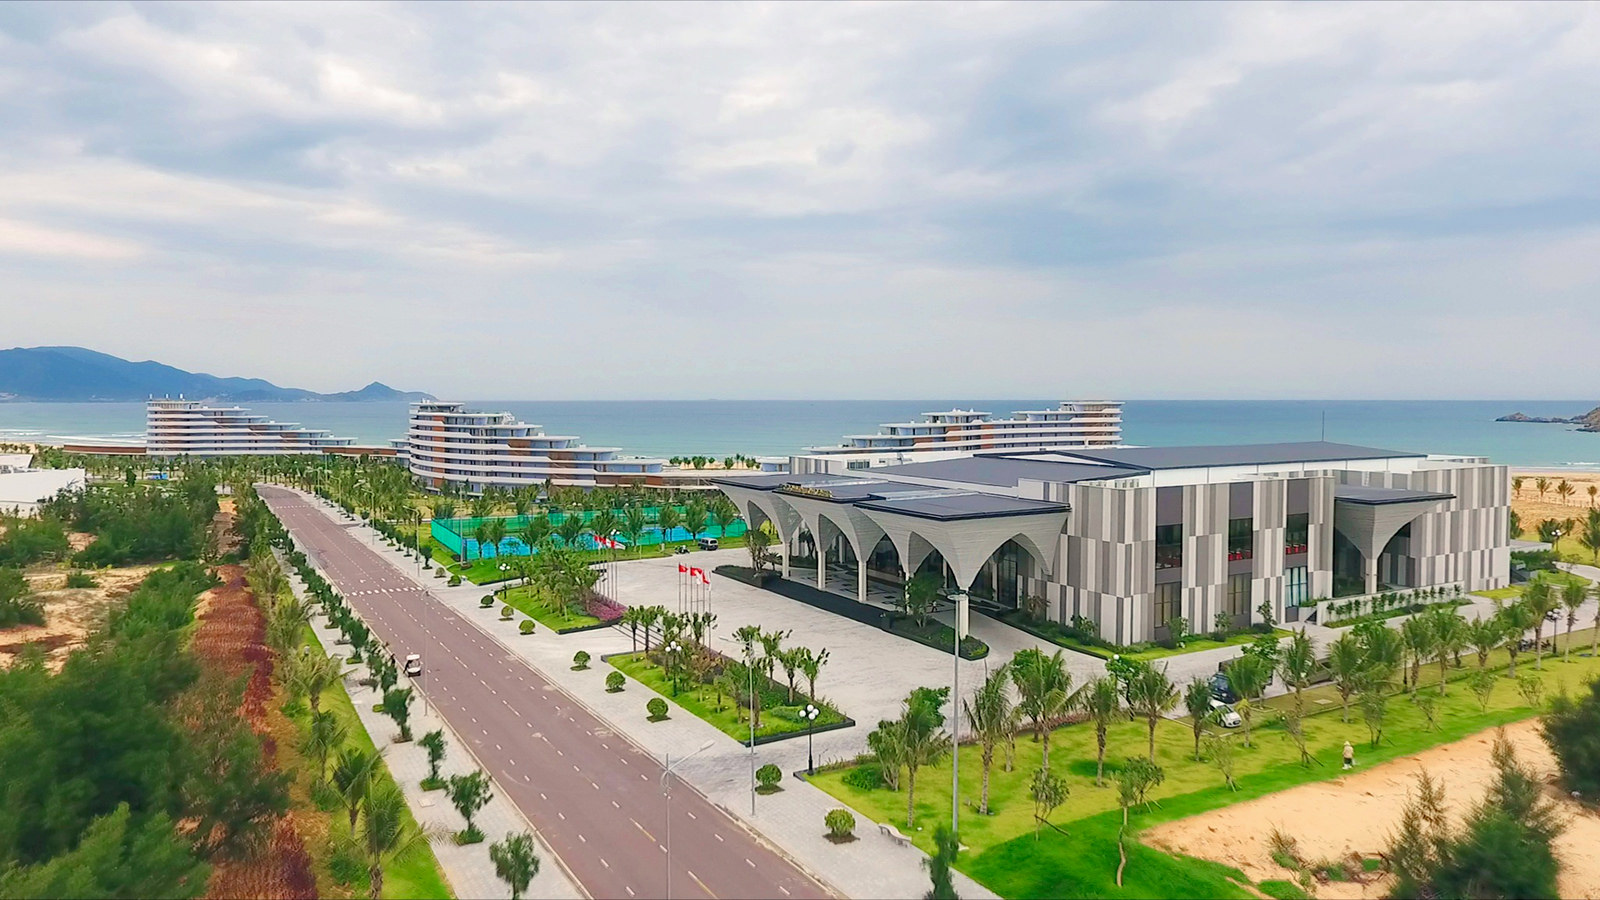 Quần thể du lịch nghỉ dưỡng FLC Quy Nhơn Beach & Golf Resort tọa lạc tại Nhơn Lý, TP. Quy Nhơn, tỉnh Bình Định, có diện tích 1.300ha, tổng mức đầu tư 7.000 tỷ đồng.